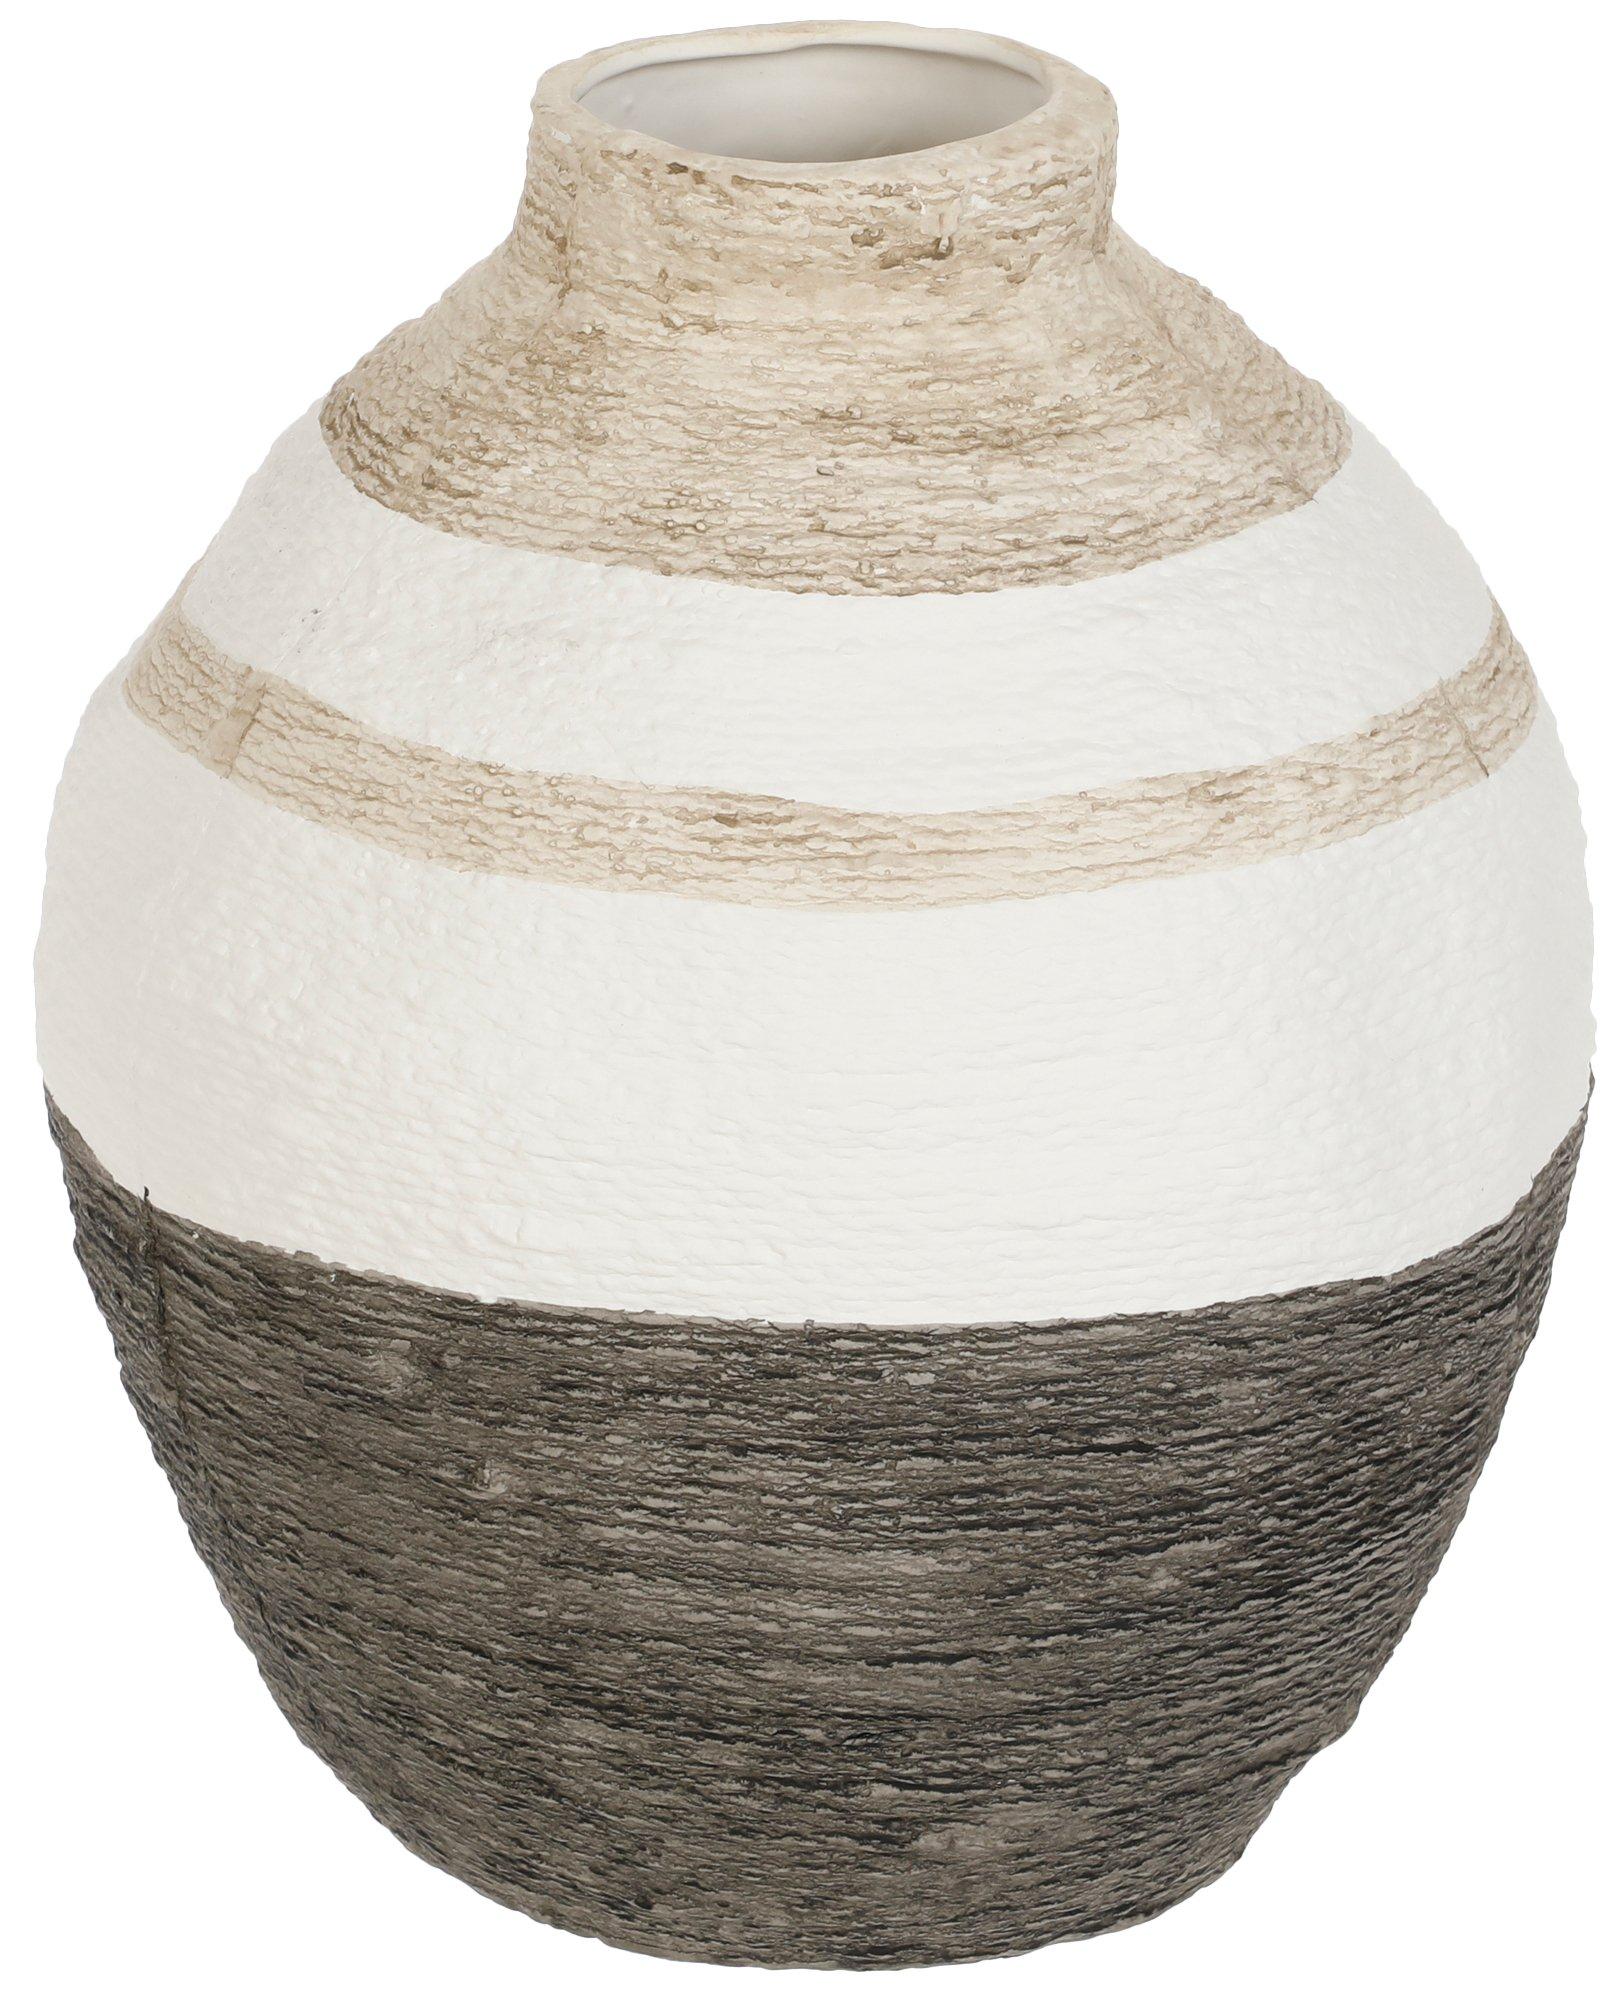 10x12 Decorative Vase